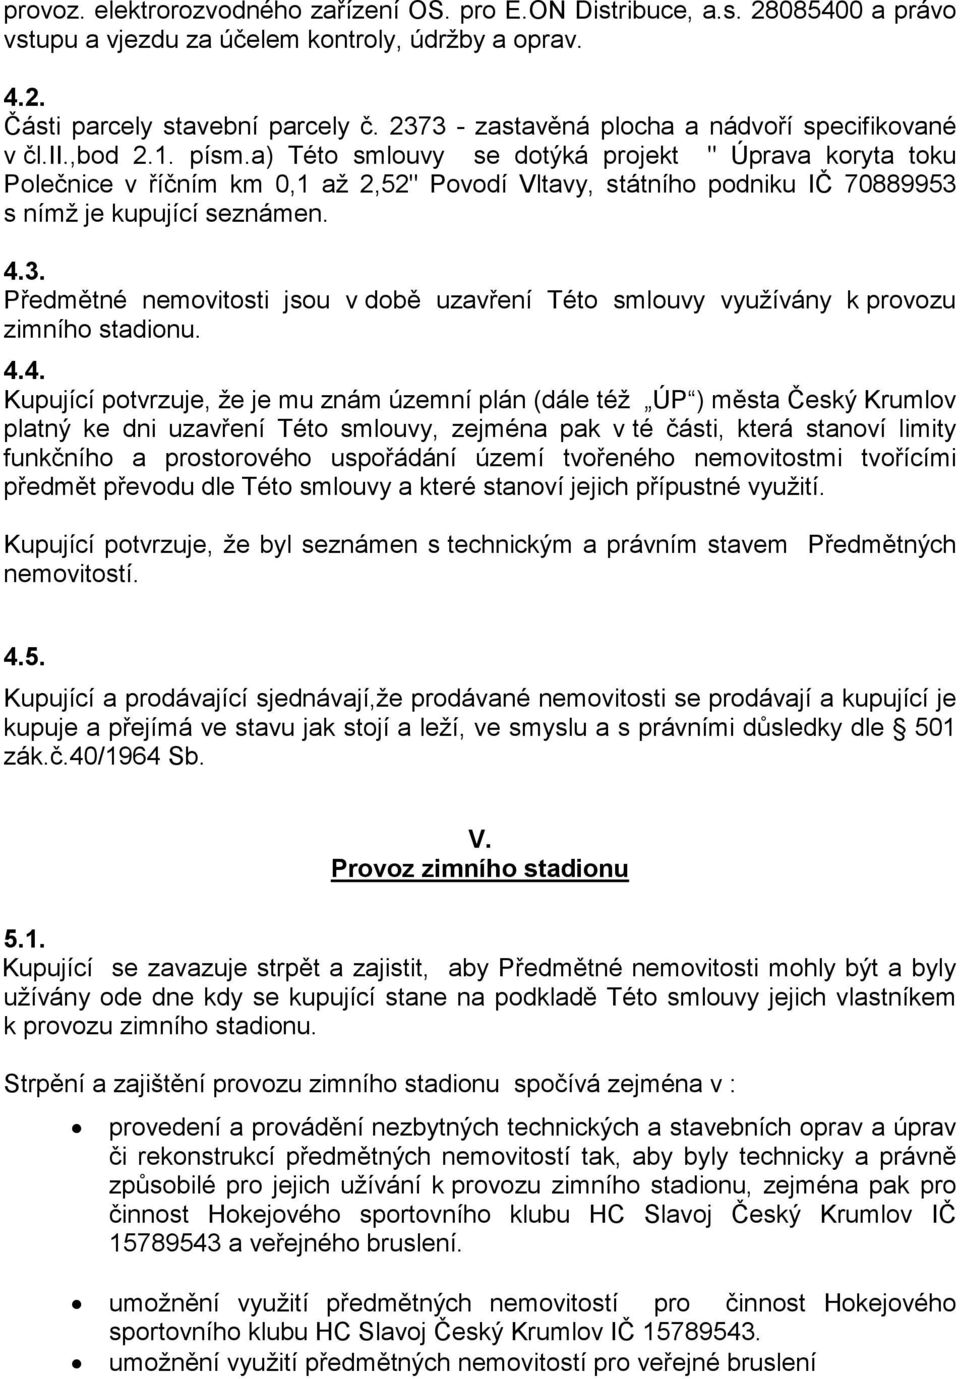 a) Této smlouvy se dotýká projekt " Úprava koryta toku Polečnice v říčním km 0,1 až 2,52" Povodí Vltavy, státního podniku IČ 70889953 